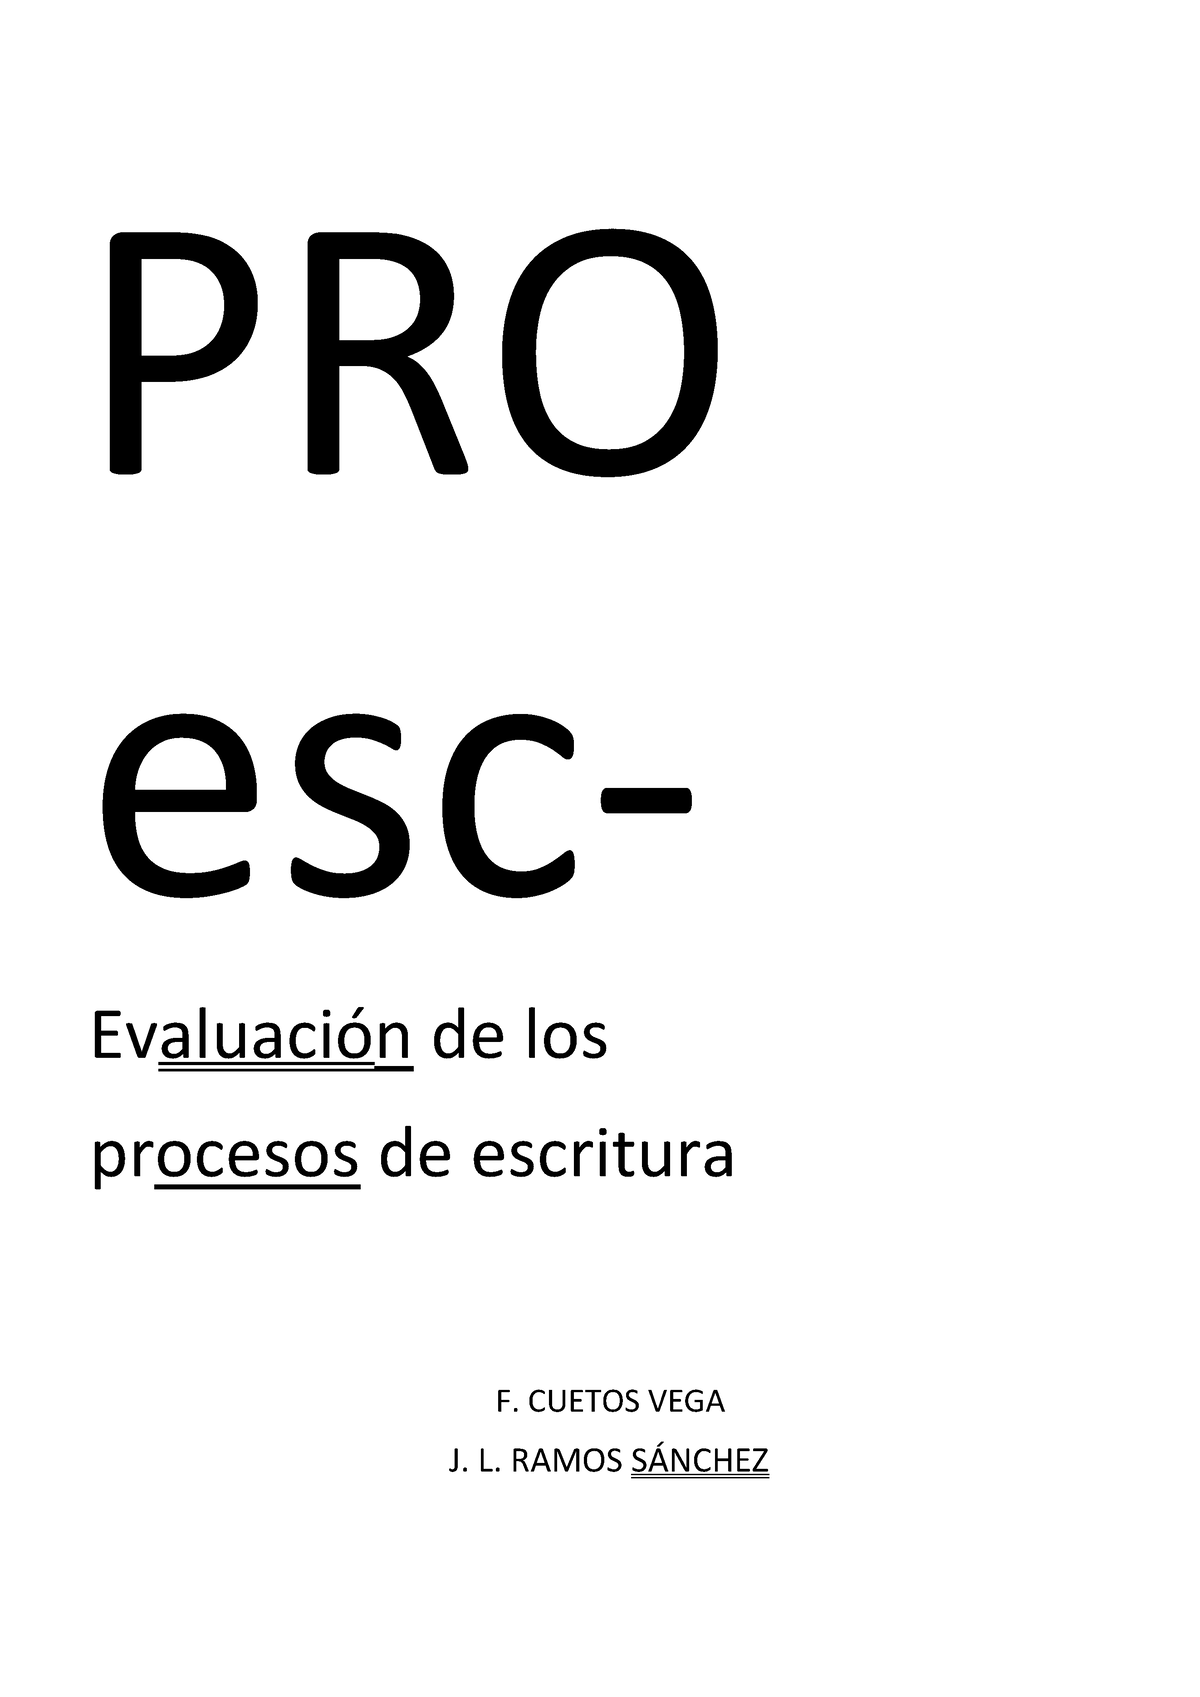 PROESC. Batería de Evaluación de los Procesos de Escritura